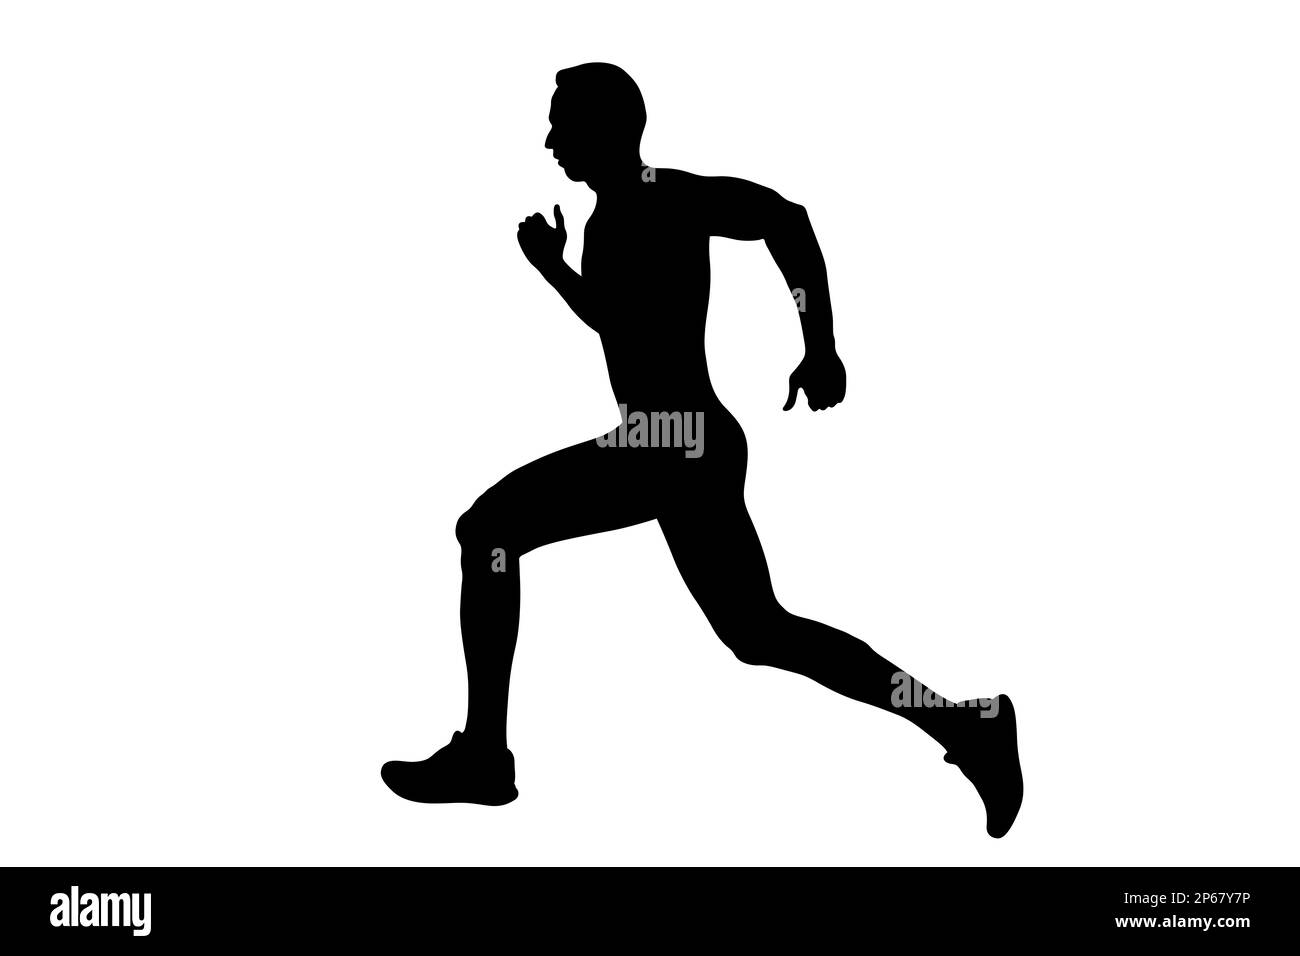 black silhouette male runner running on white background Stock Photo